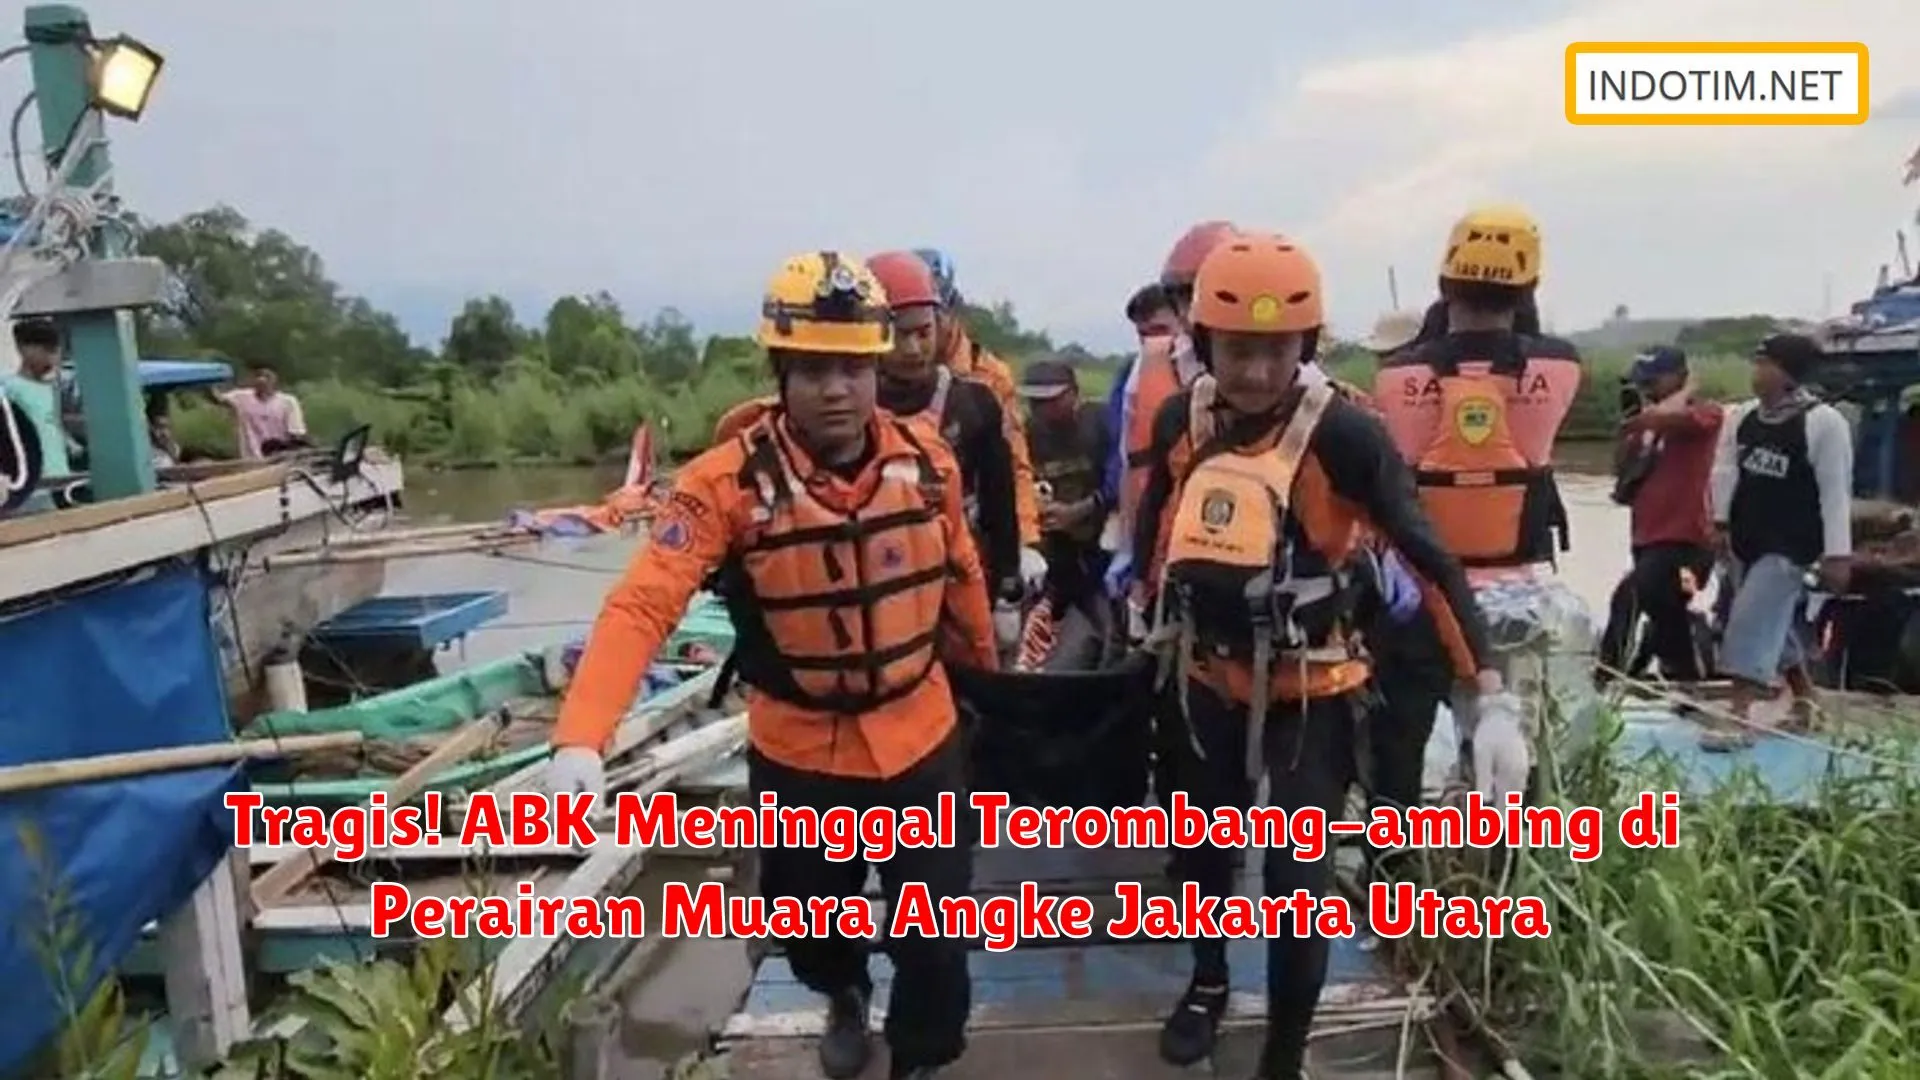 Tragis! ABK Meninggal Terombang-ambing di Perairan Muara Angke Jakarta Utara